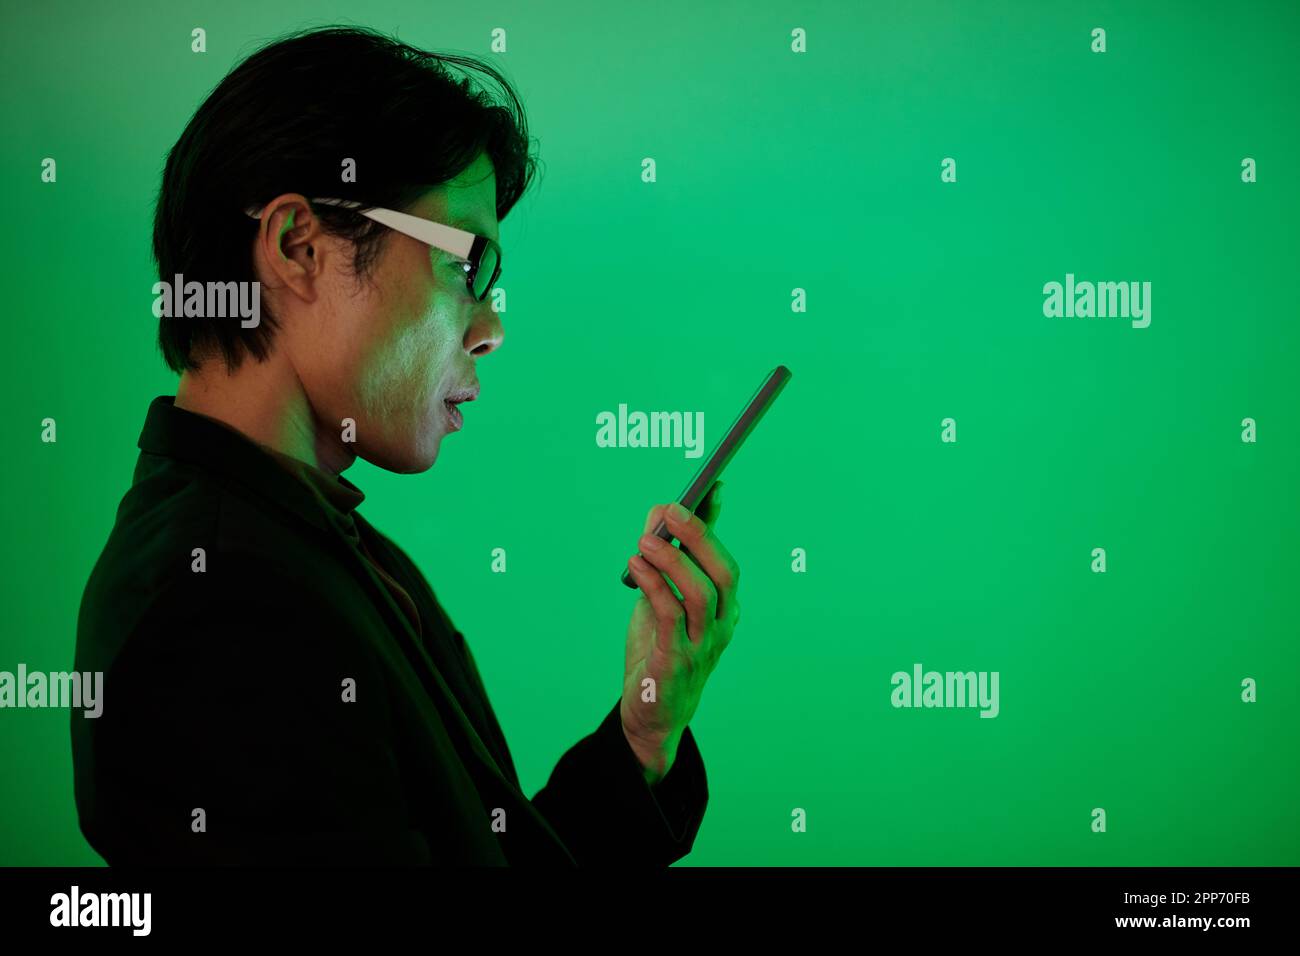 Homme pensif lisant des messages texte dans un smartphone, isolé sur fond vert Banque D'Images